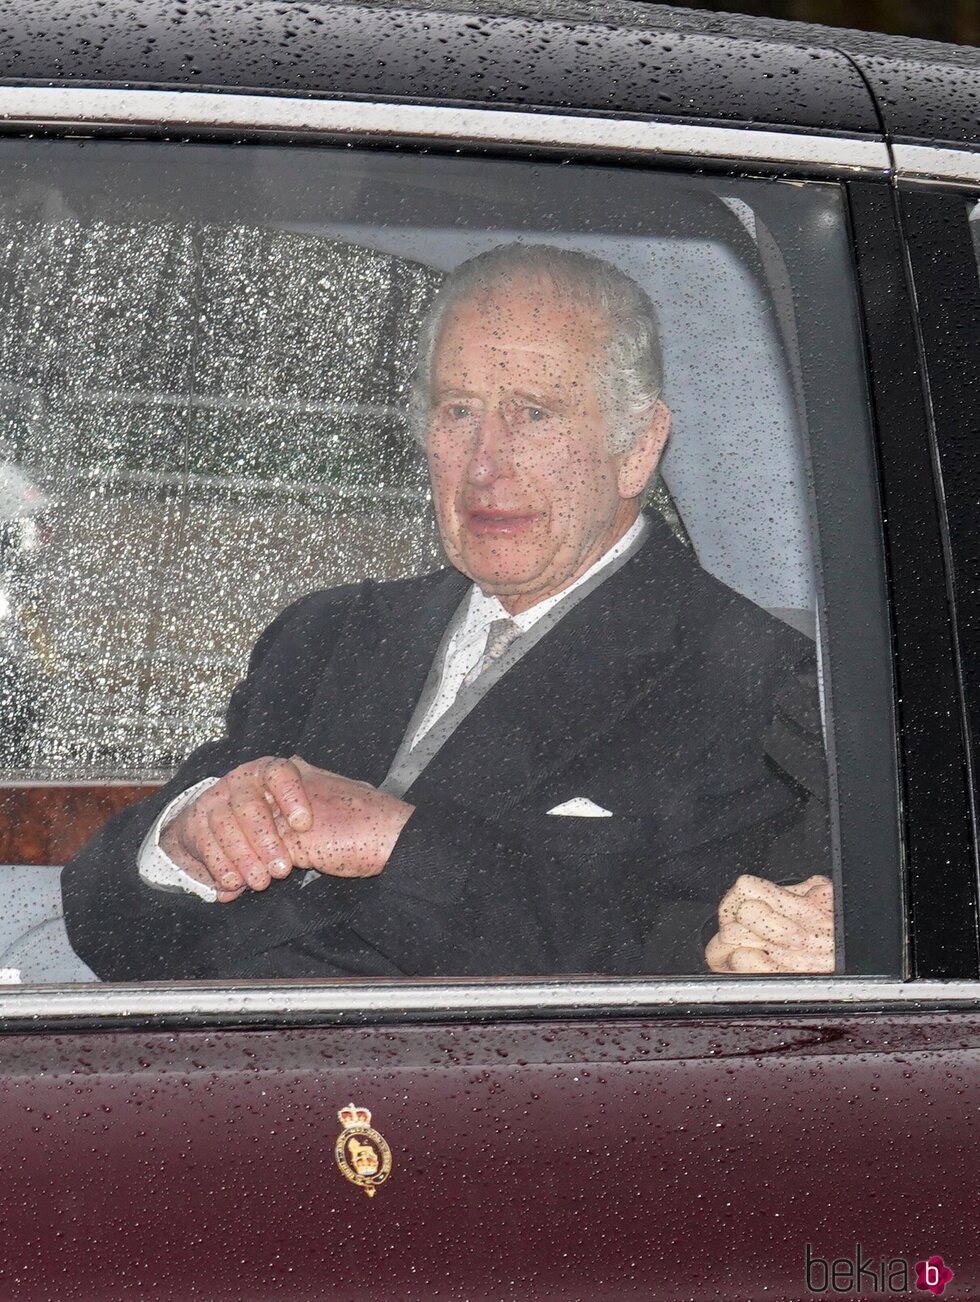 El Rey Carlos III regresa a Clarence House para seguir su tratamiento contra el cáncer